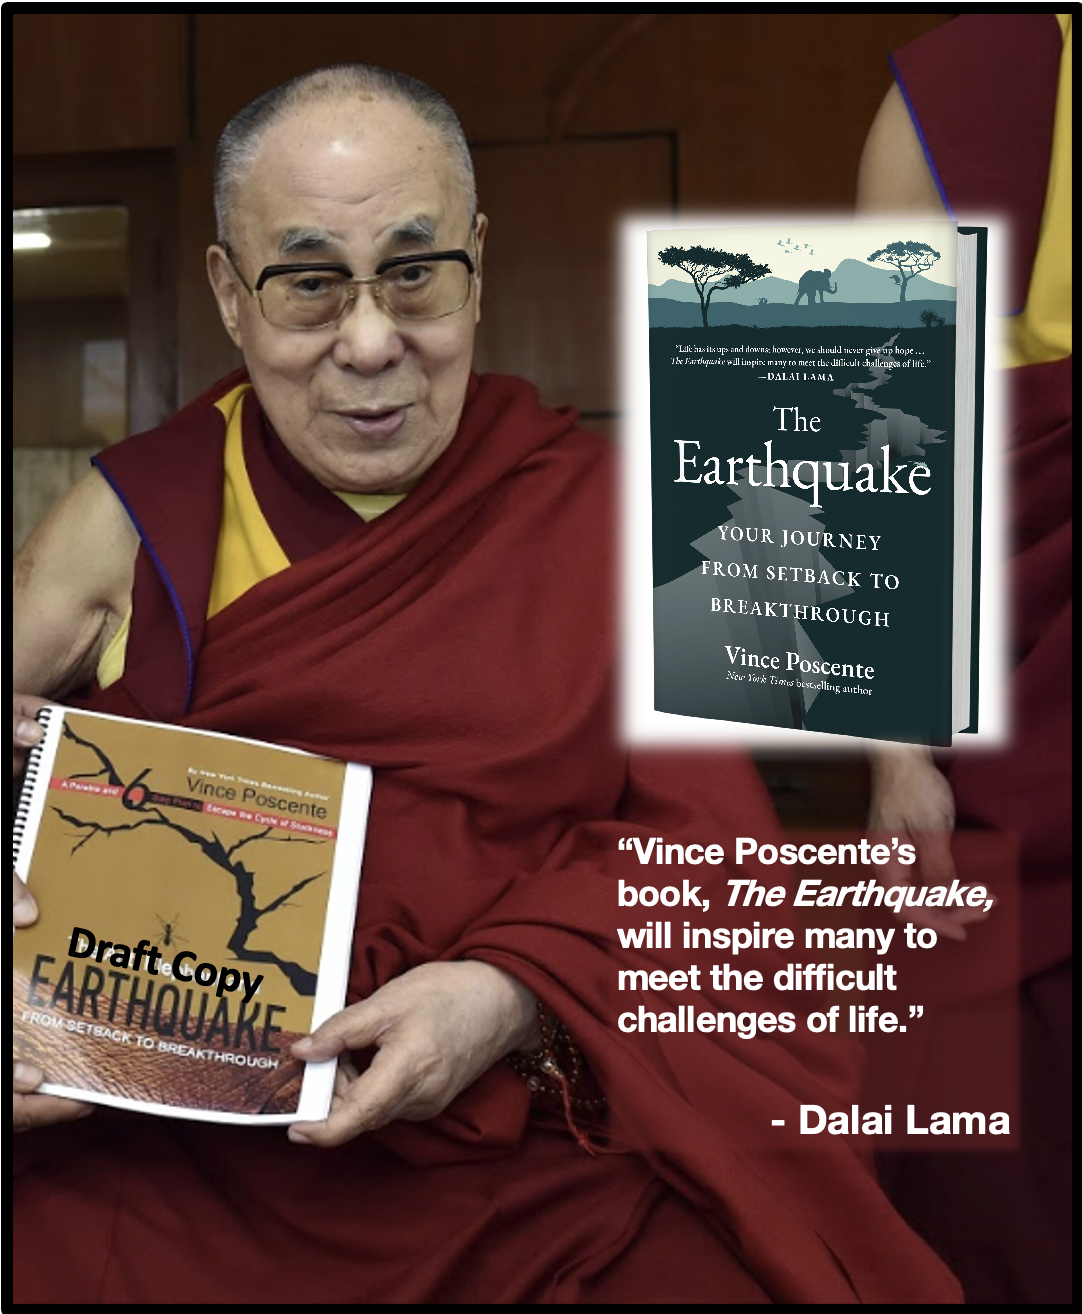 Dalai Lama holds The Earthquake